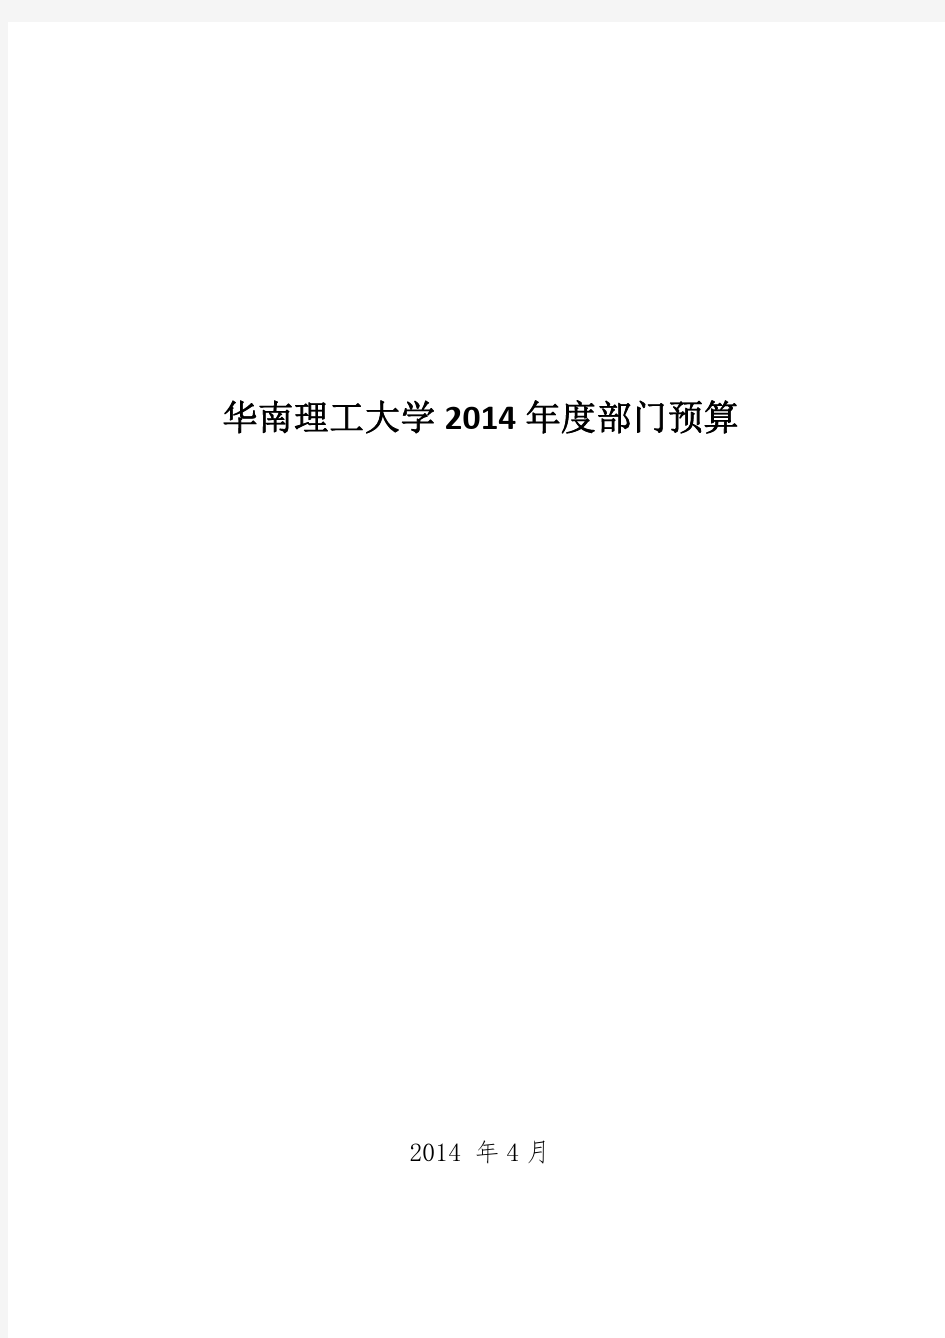 华南理工大学2014年财政预算